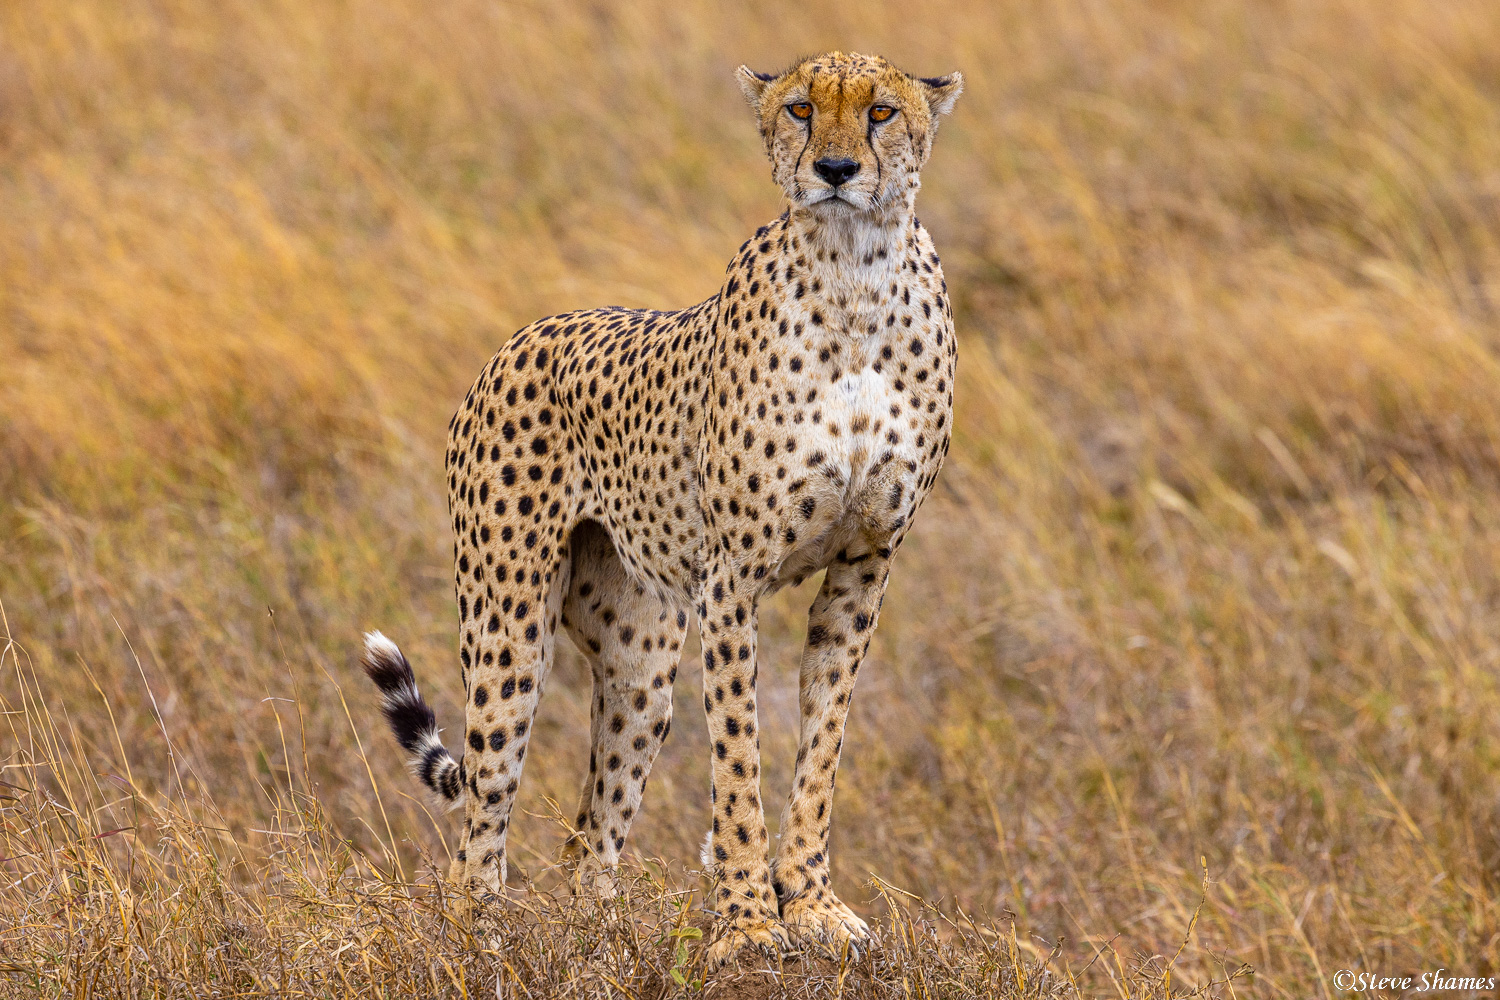 Cheetah surveying the Serengeti plains.